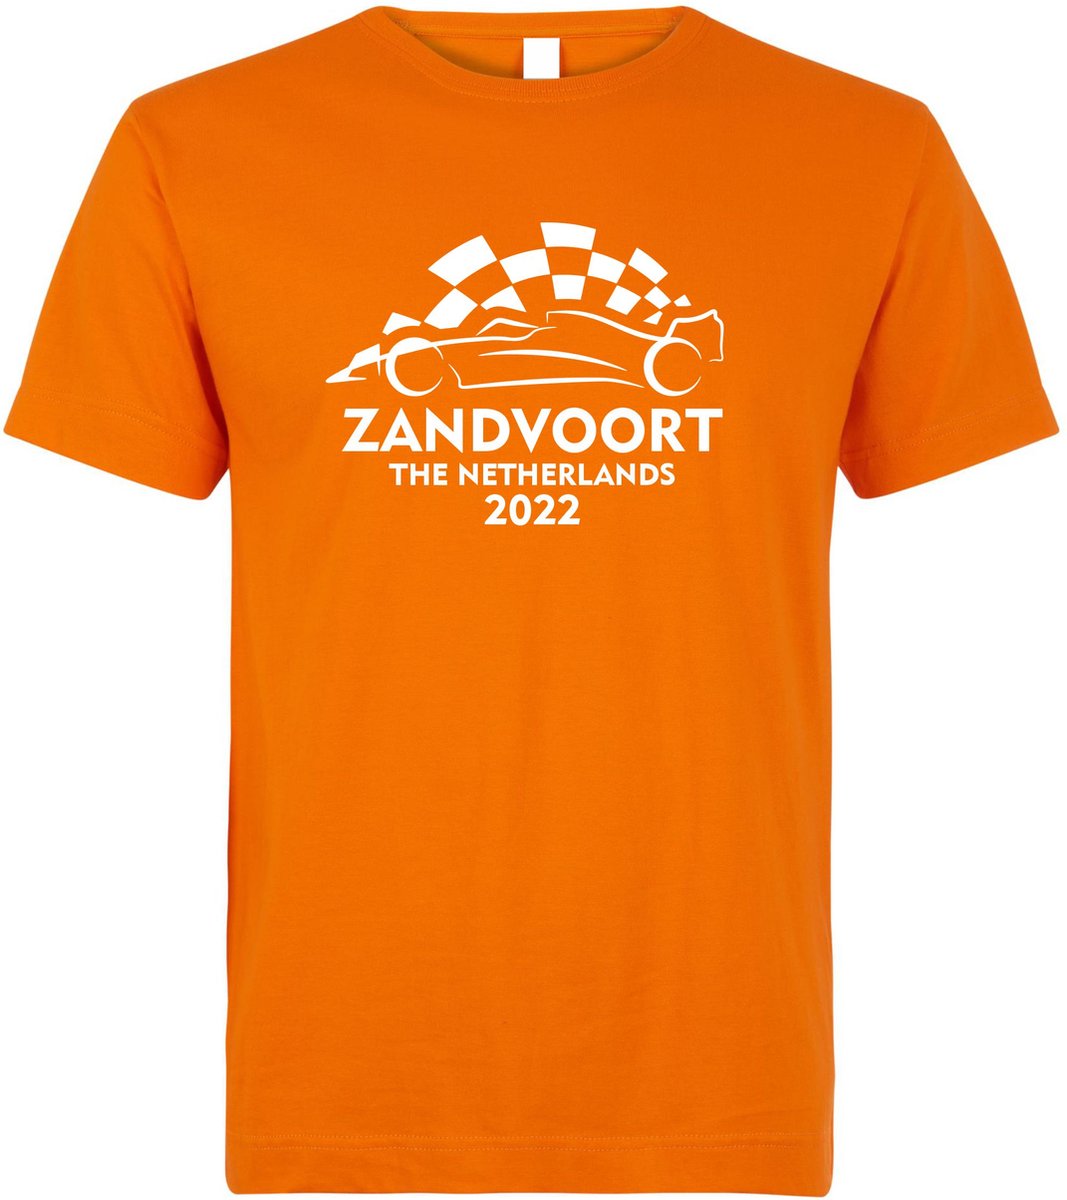 T-shirt Zandvoort The Netherlands 2022 met raceauto | Max Verstappen / Red Bull Racing / Formule 1 fan | Grand Prix Circuit Zandvoort | kleding shirt | Oranje | maat M